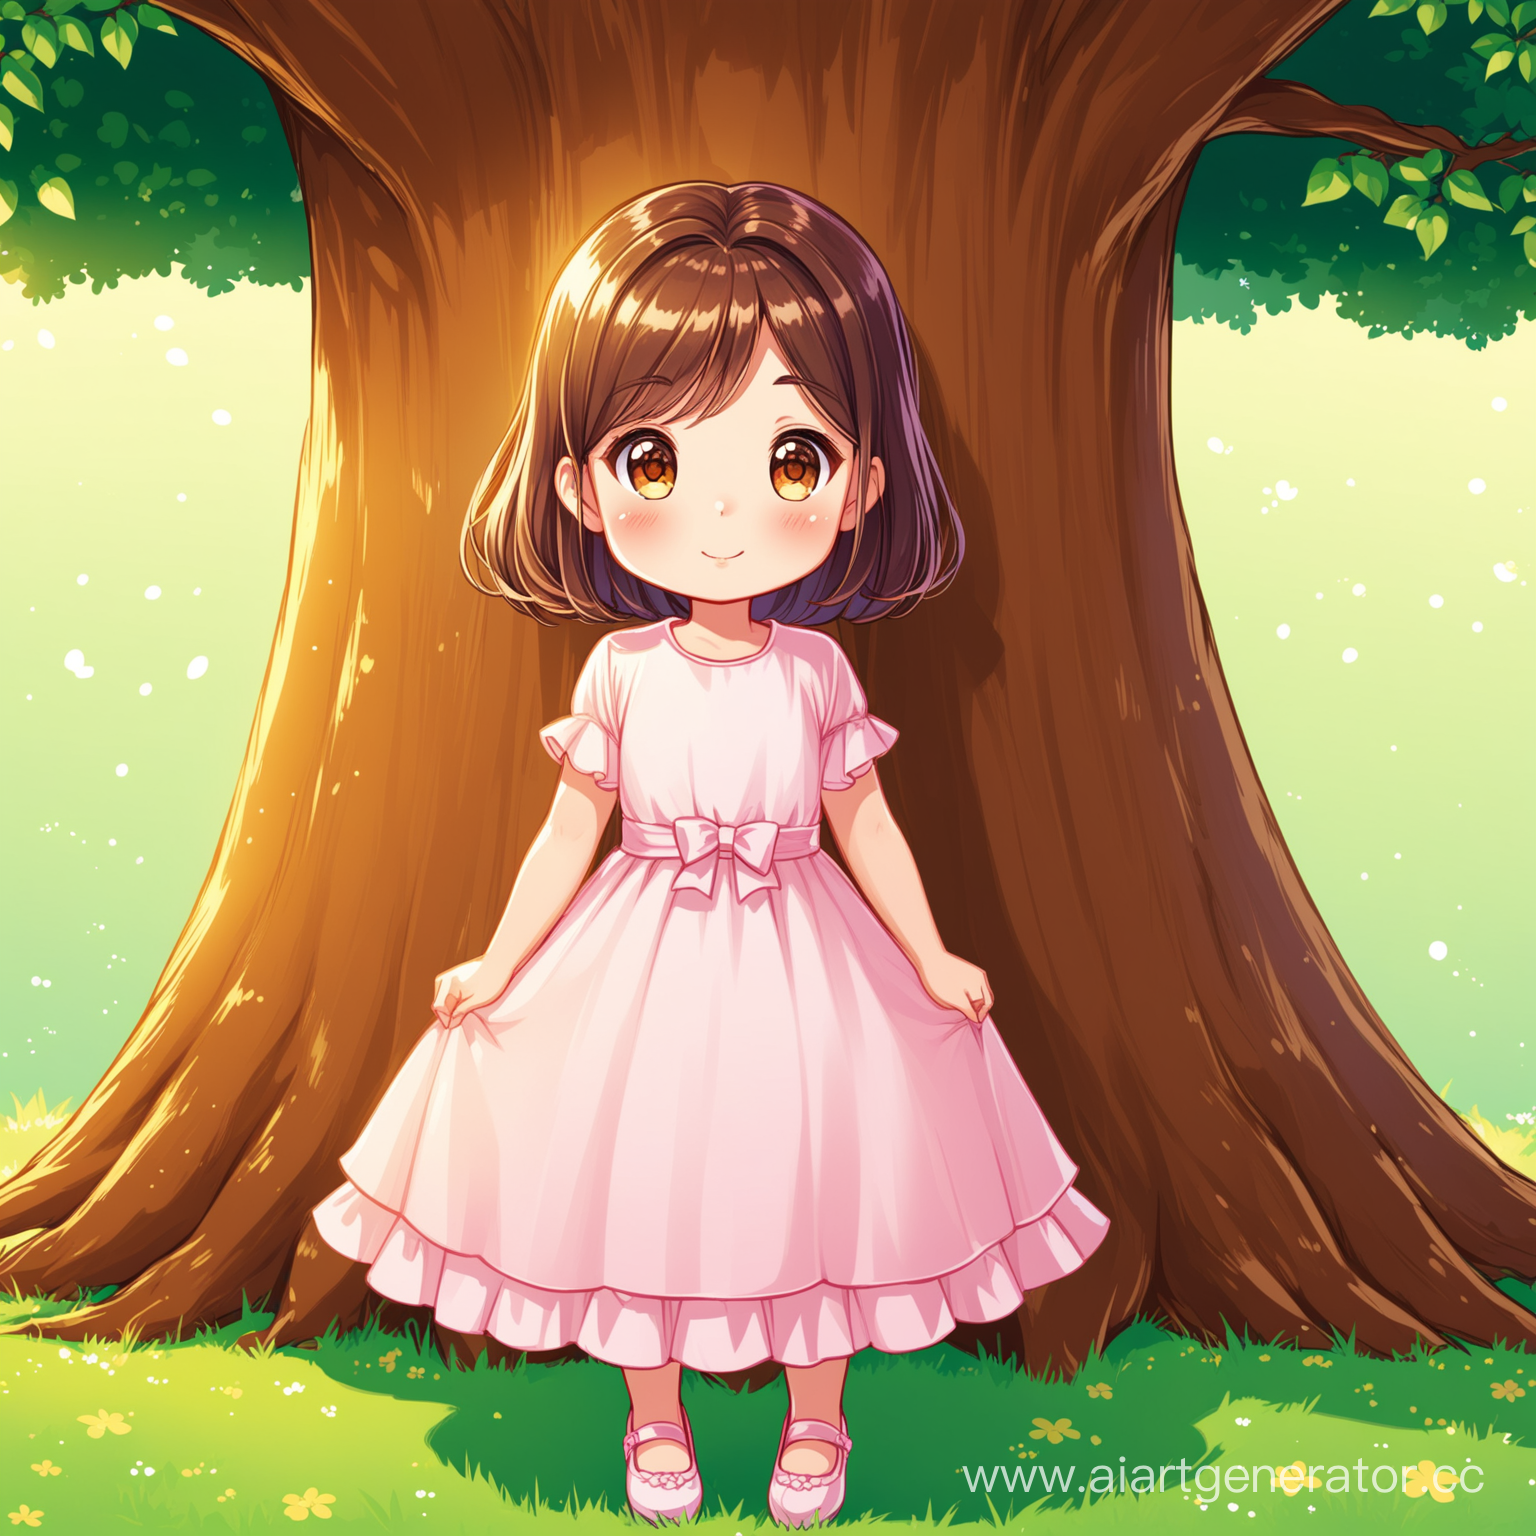 мультяшная девочка в платье возле дерева